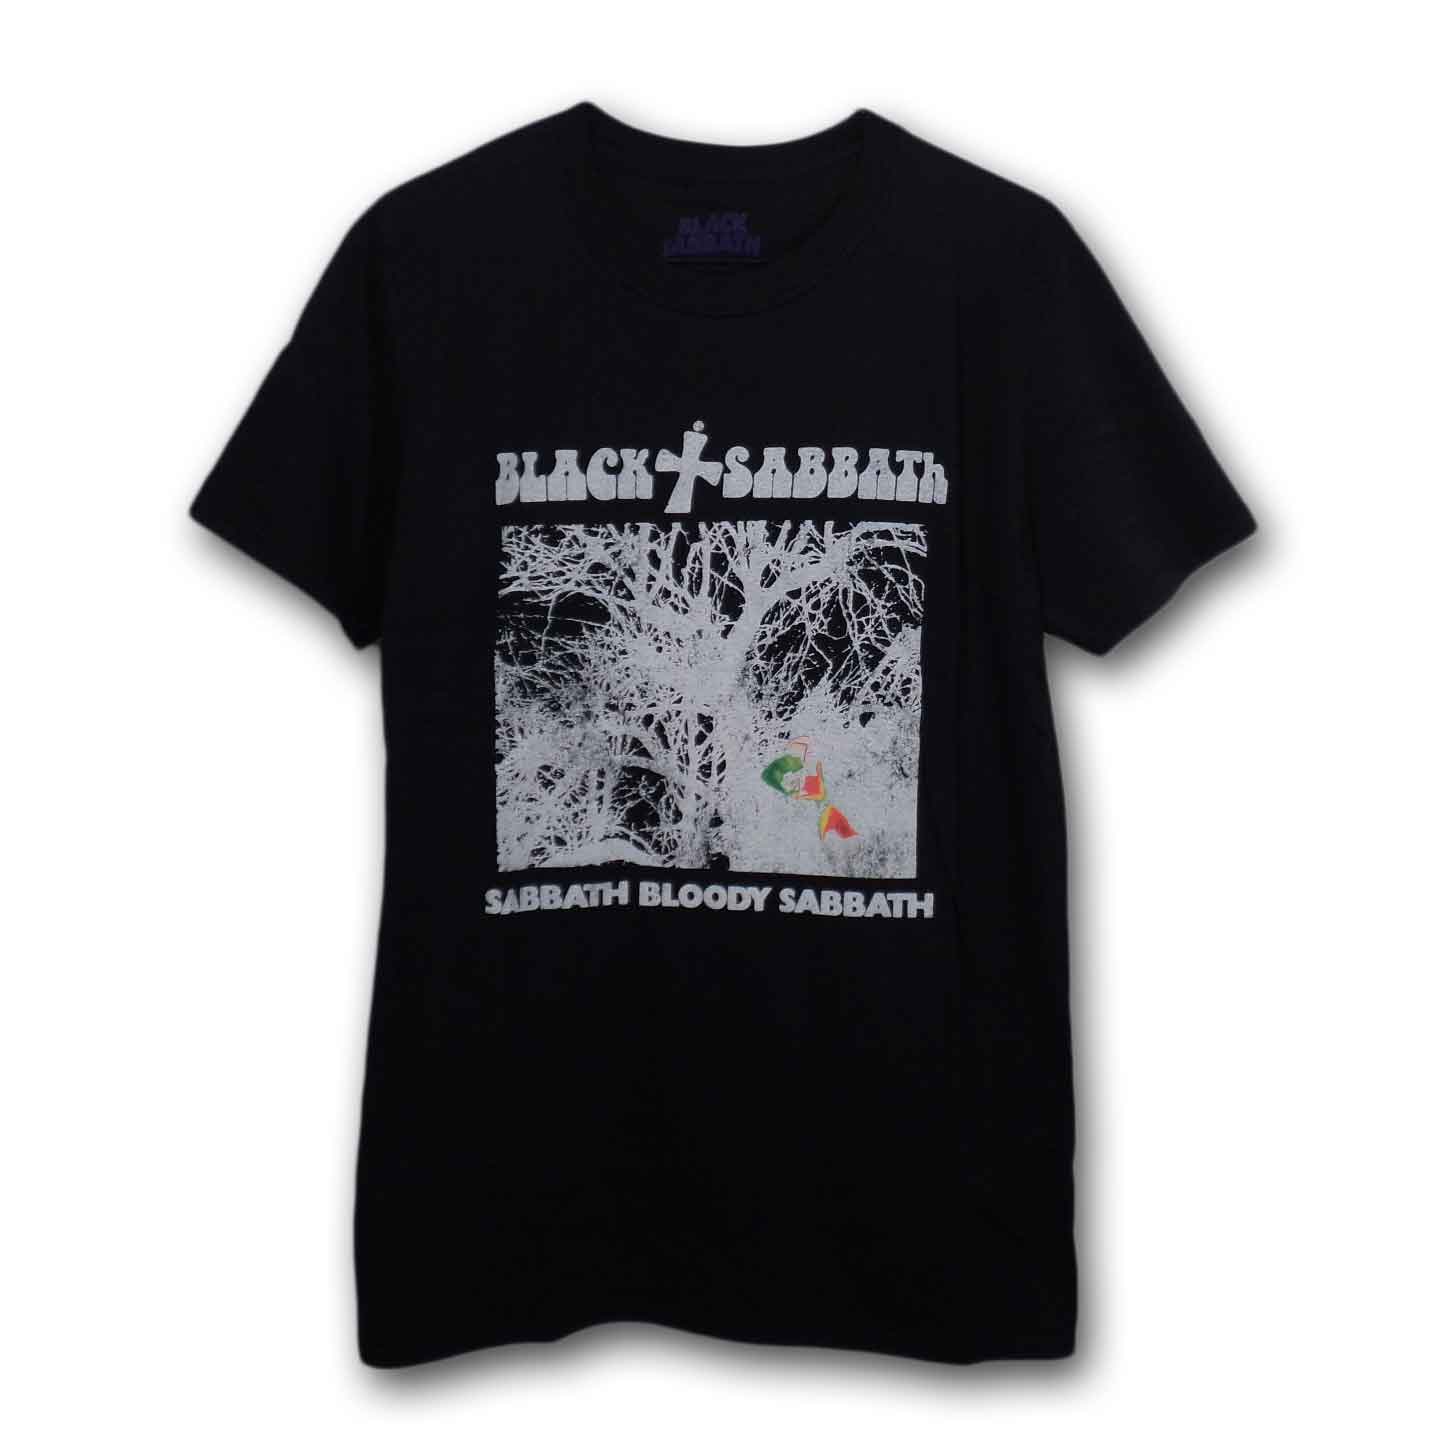 Black Sabbath バンドTシャツ ブラックサバス Vintage Sabbath Bloody